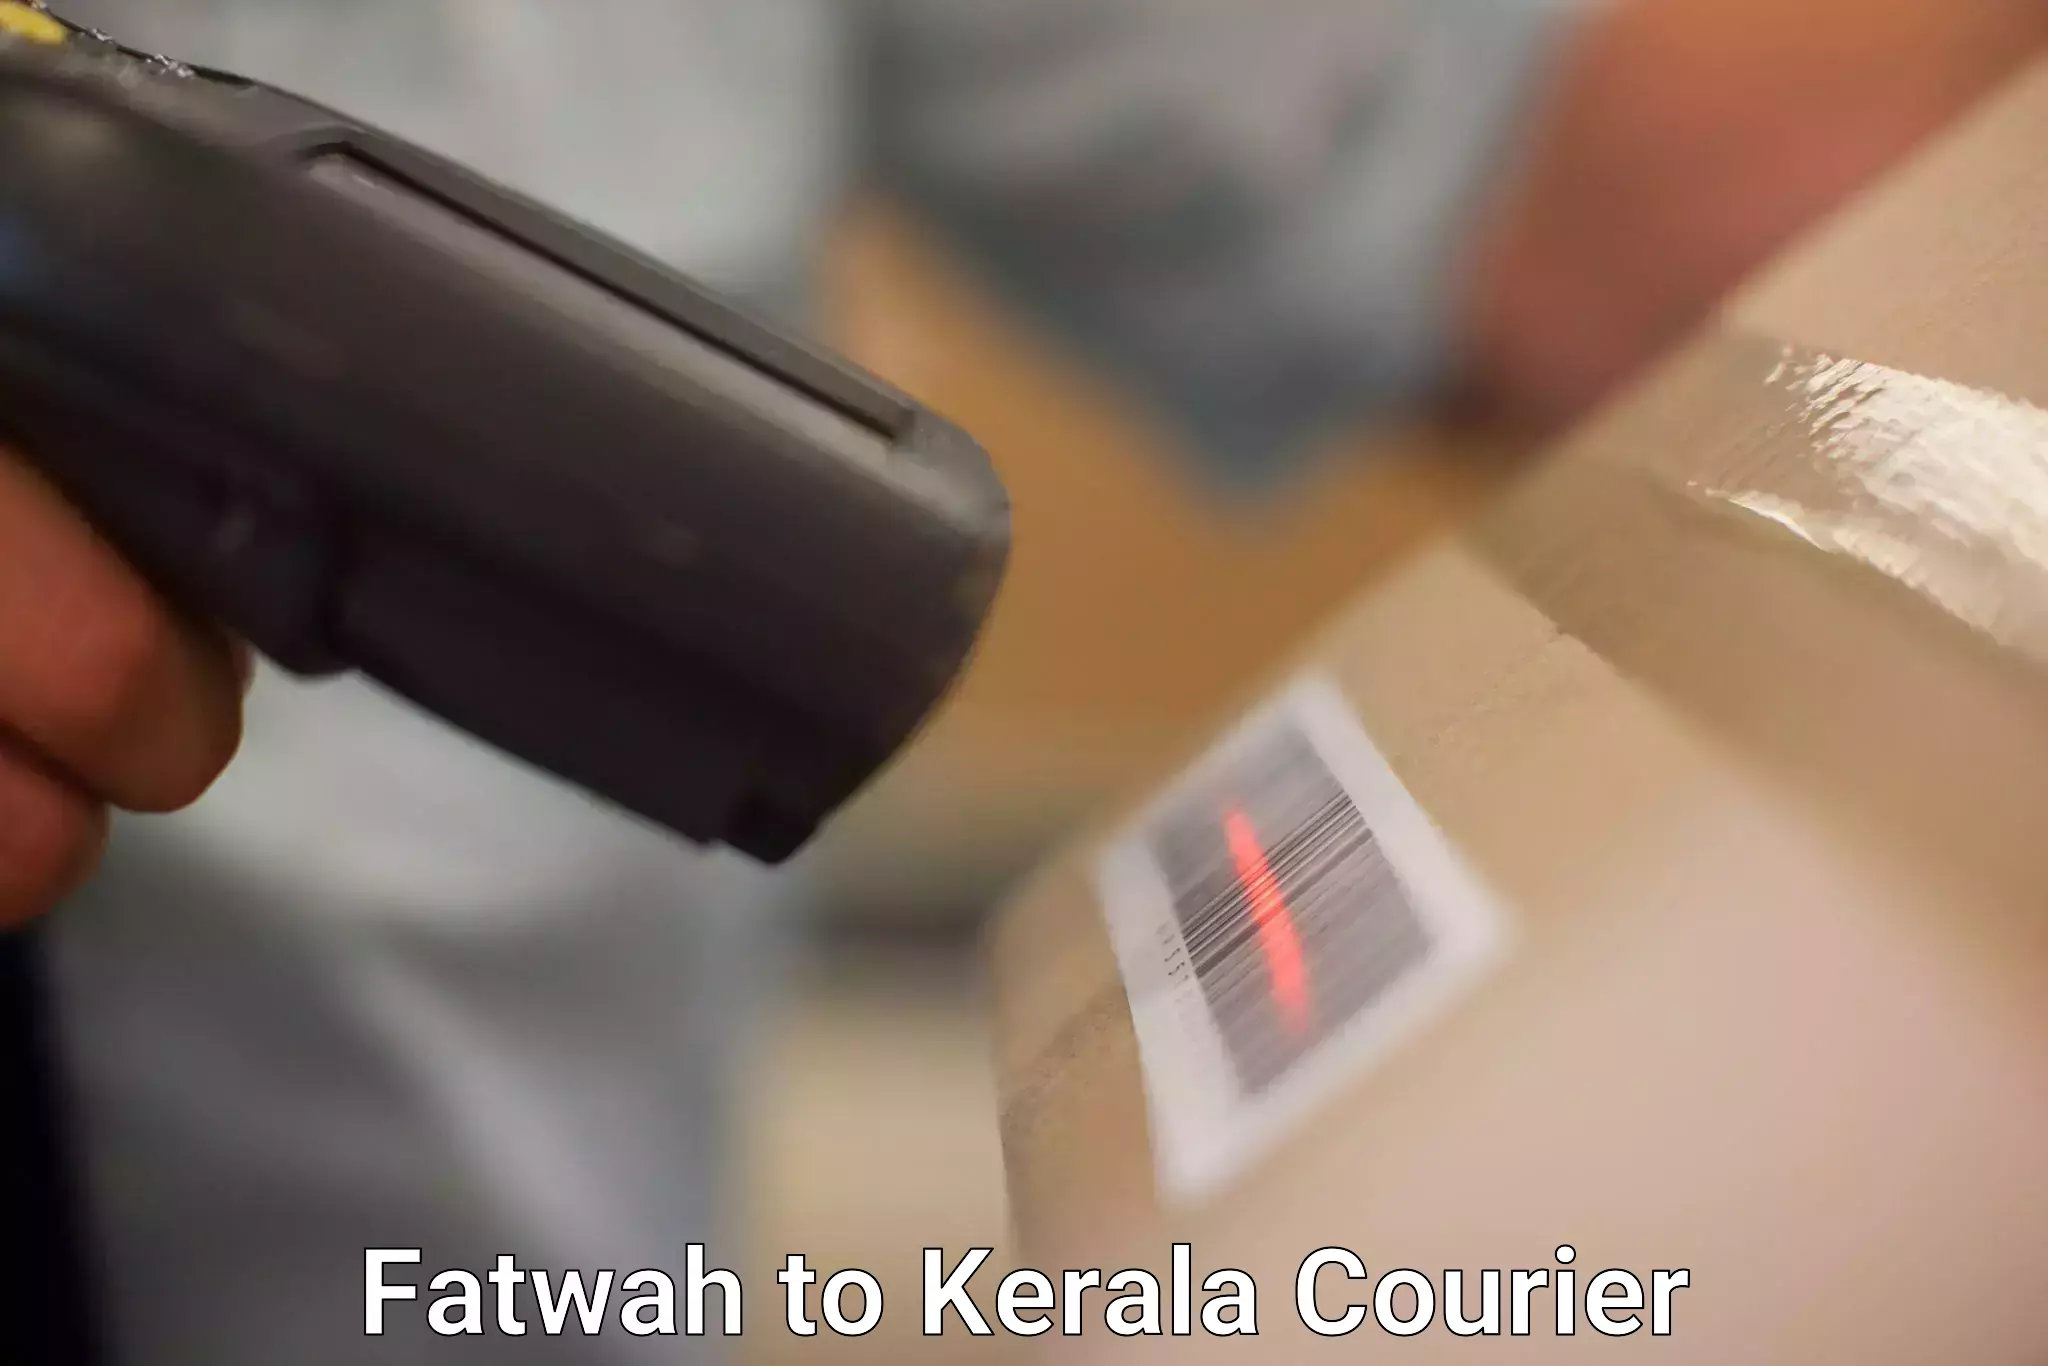 Bulk shipment in Fatwah to Kerala